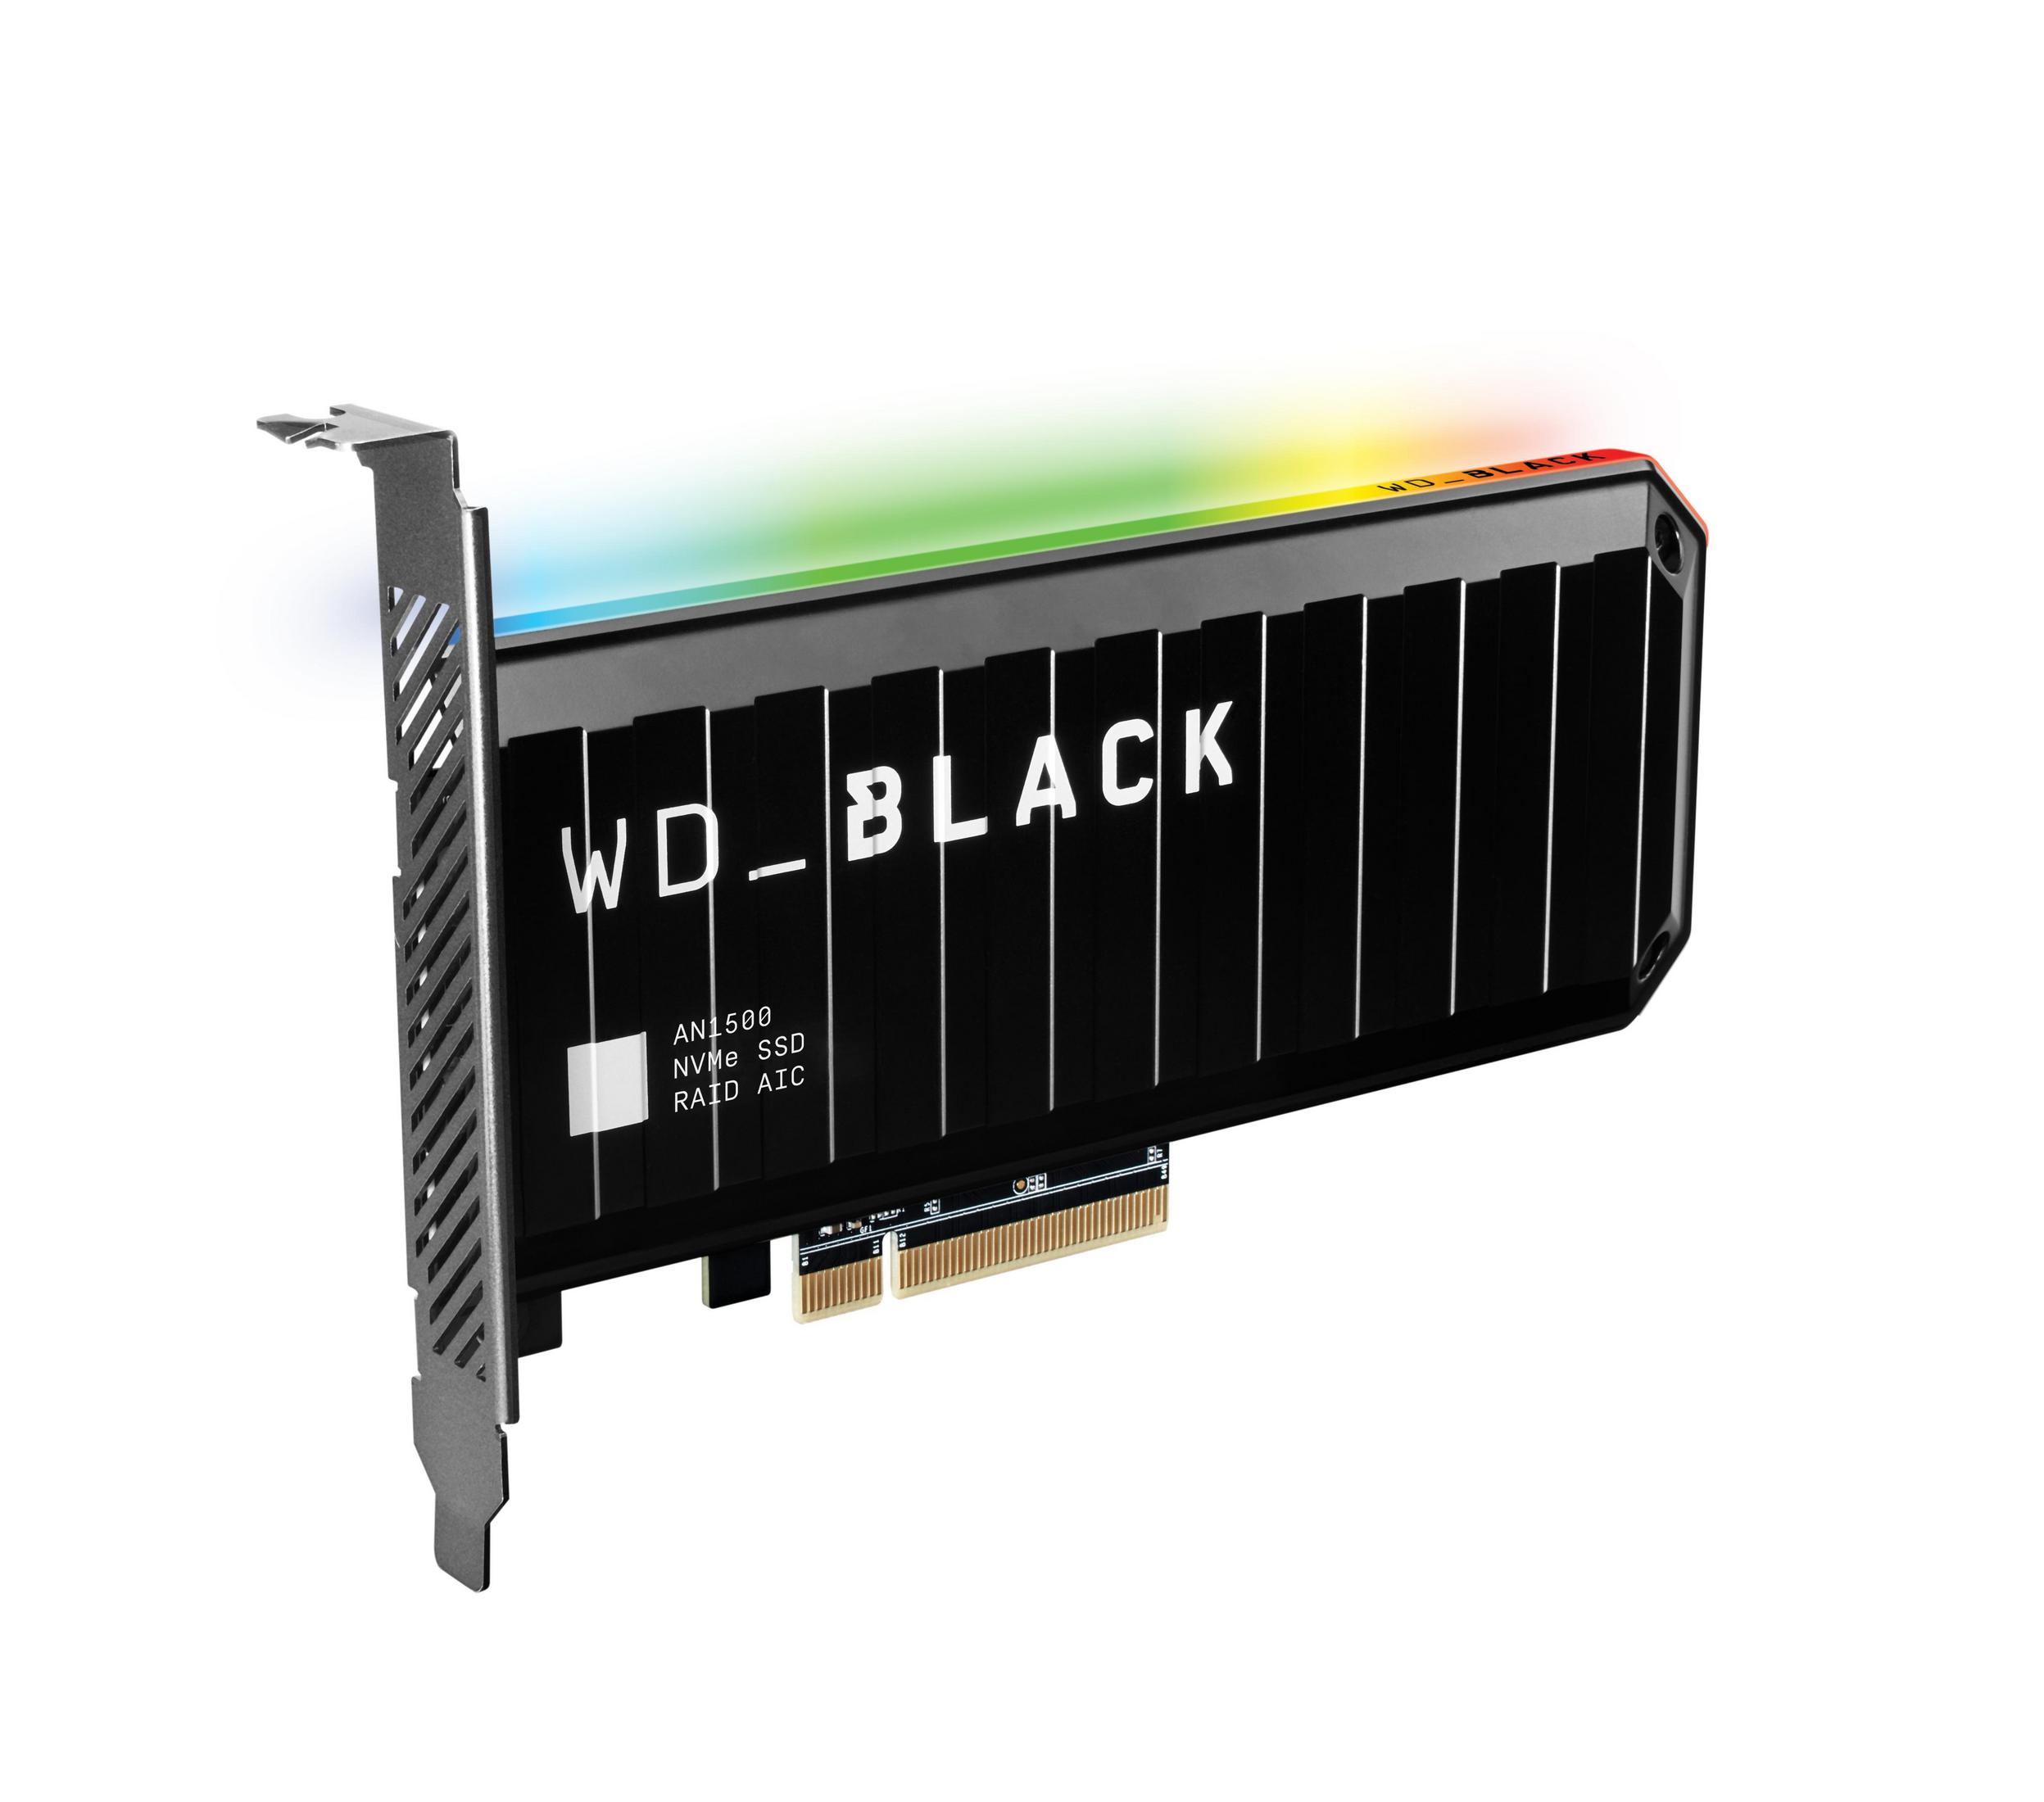 WD AN1500 intern 2 PCIE TB, 2TB, WDS200T1X0L BLACK WD SSD,